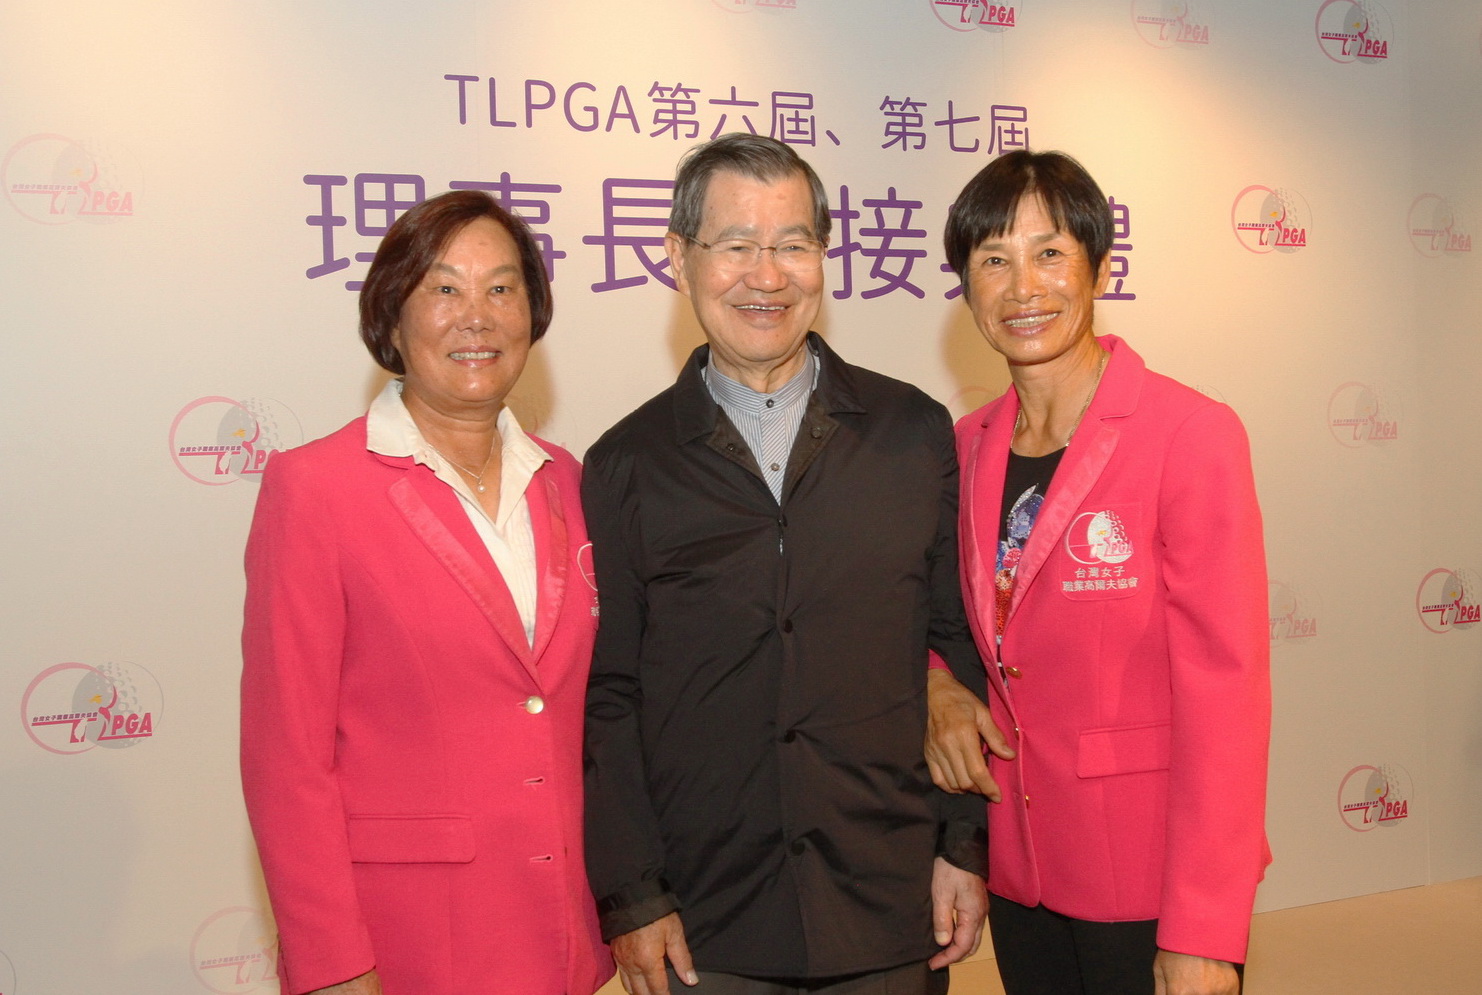 TLPGA第七屆理事長劉依貞(左起)和前副總統蕭萬長.副理事長涂阿玉合影(鍾豐榮攝影)